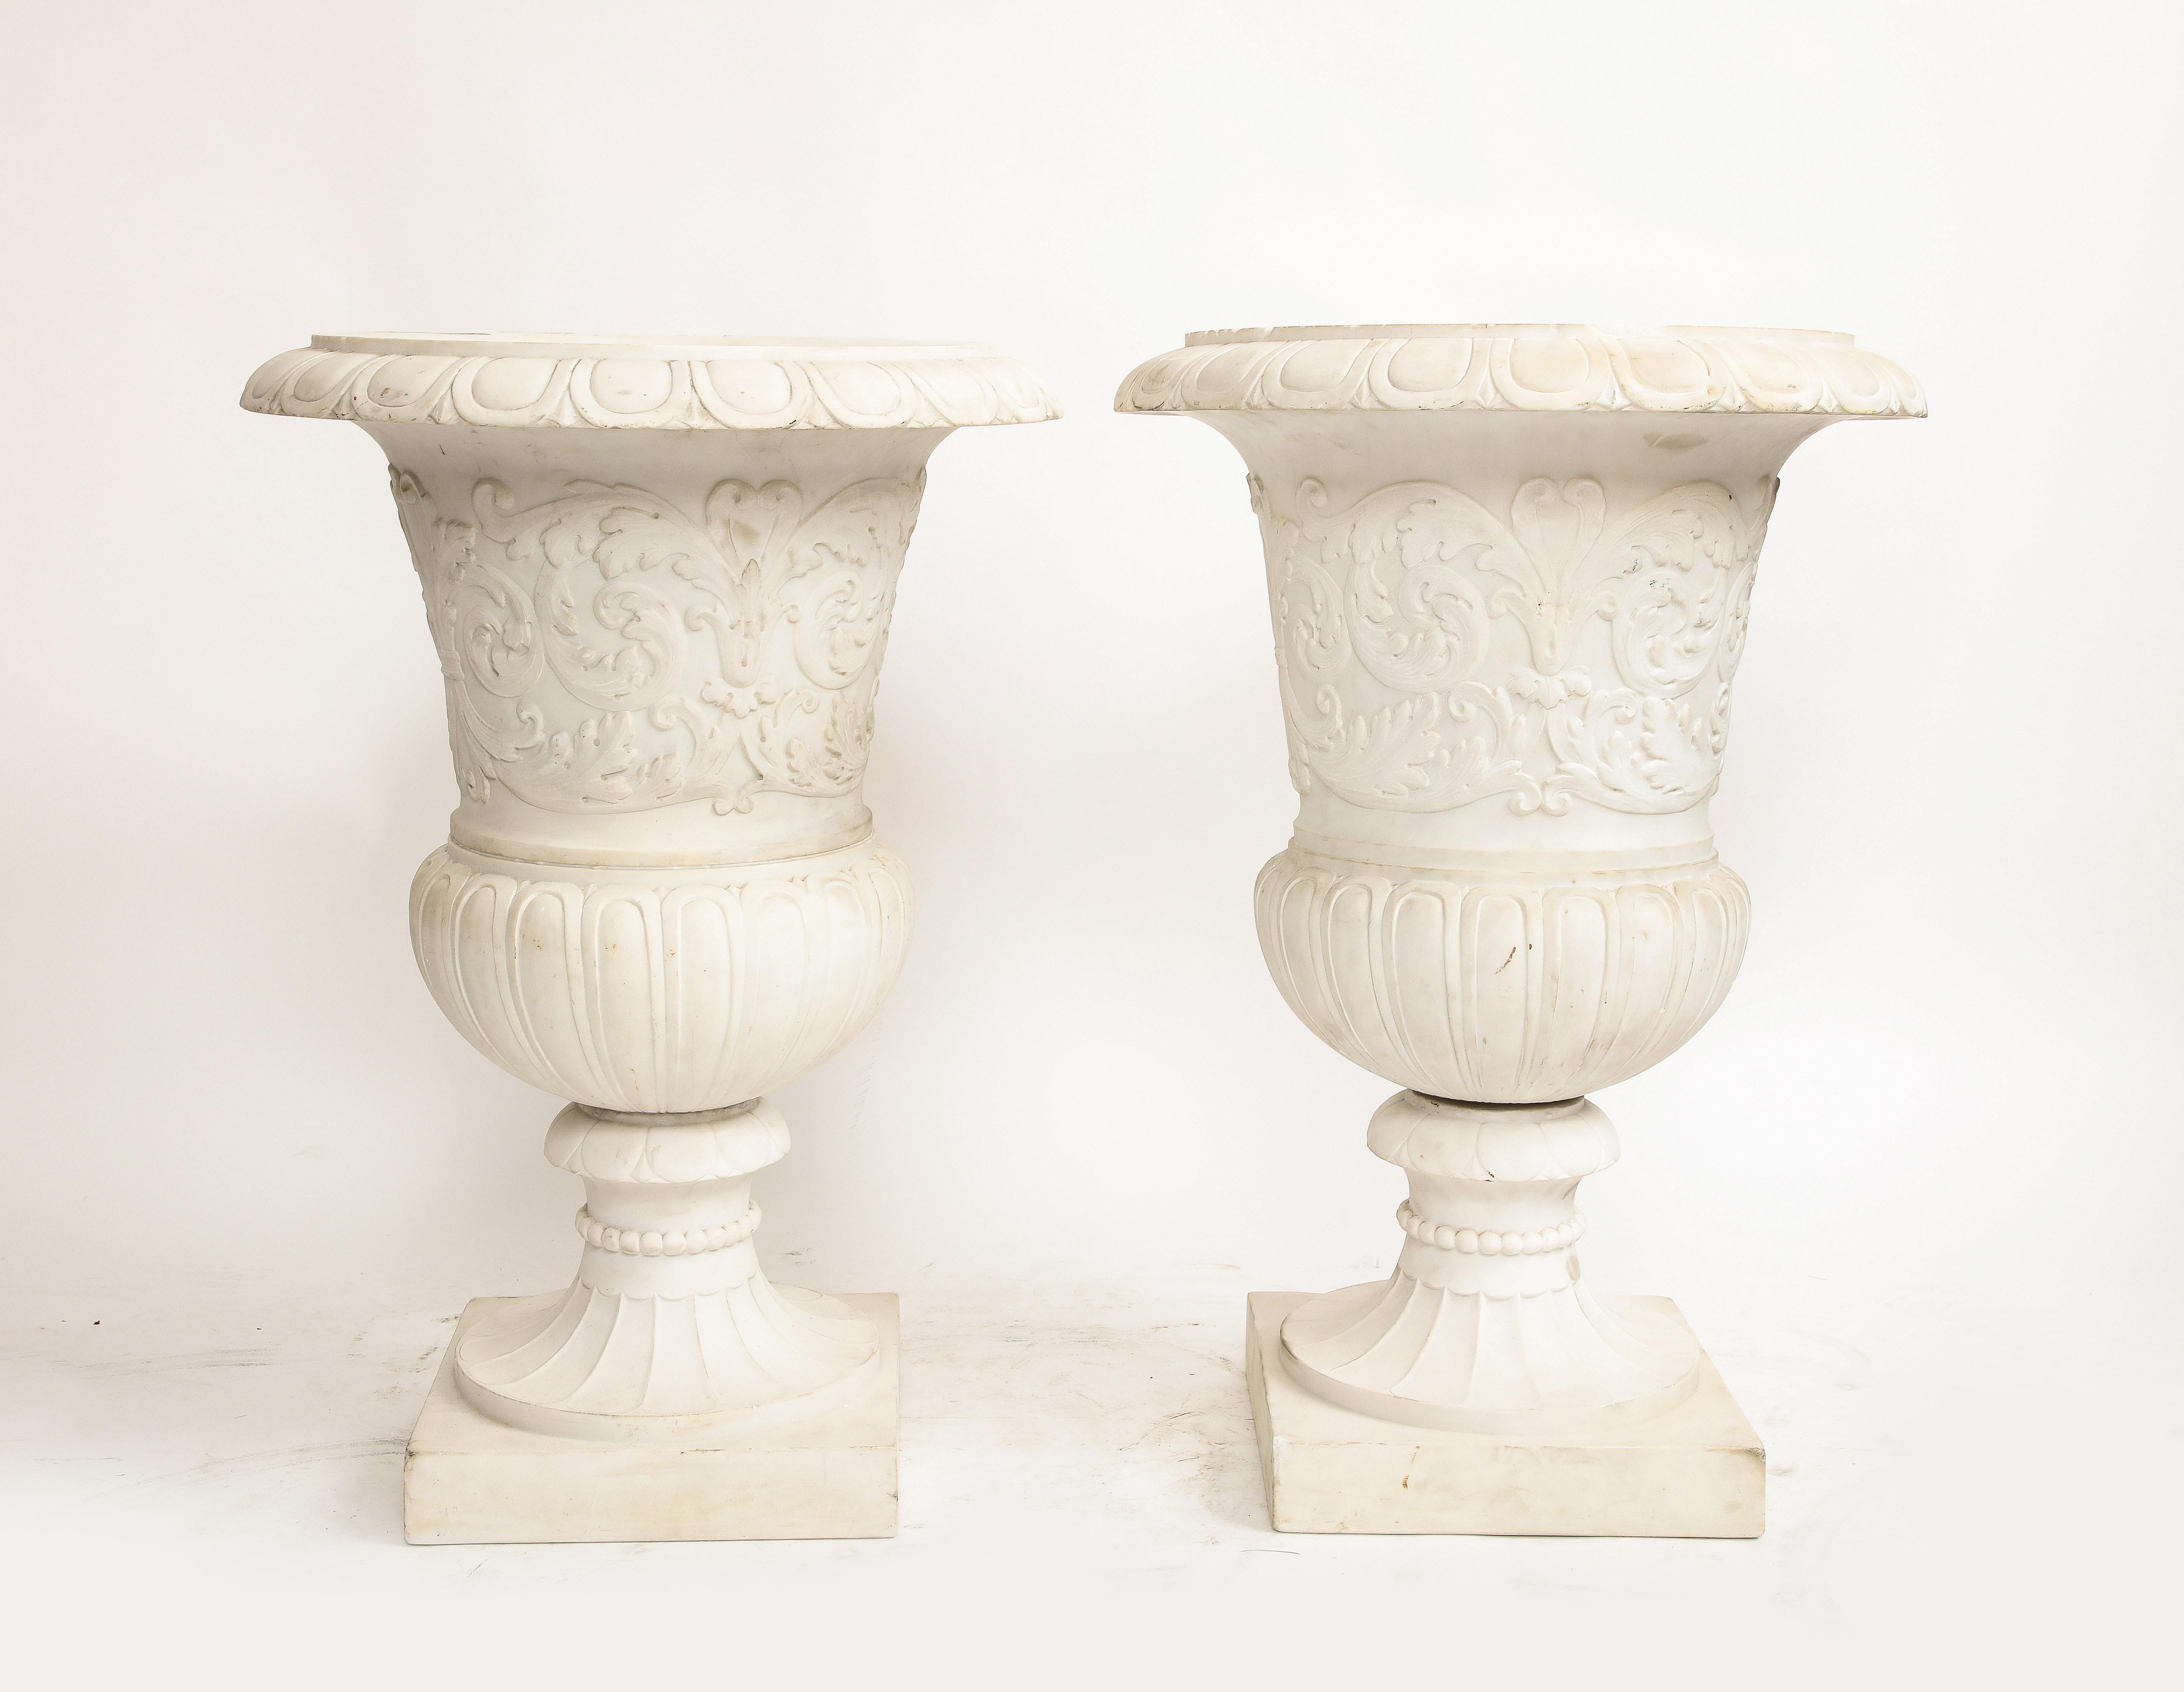 Magnifique paire de vases Médicis italiens en marbre de Carrare avec des motifs néoclassiques en relief.  D'une hauteur impressionnante de 30 pouces, ces vases témoignent de l'art impeccable inhérent au marbre de Carrare.
D'une facture élaborée et